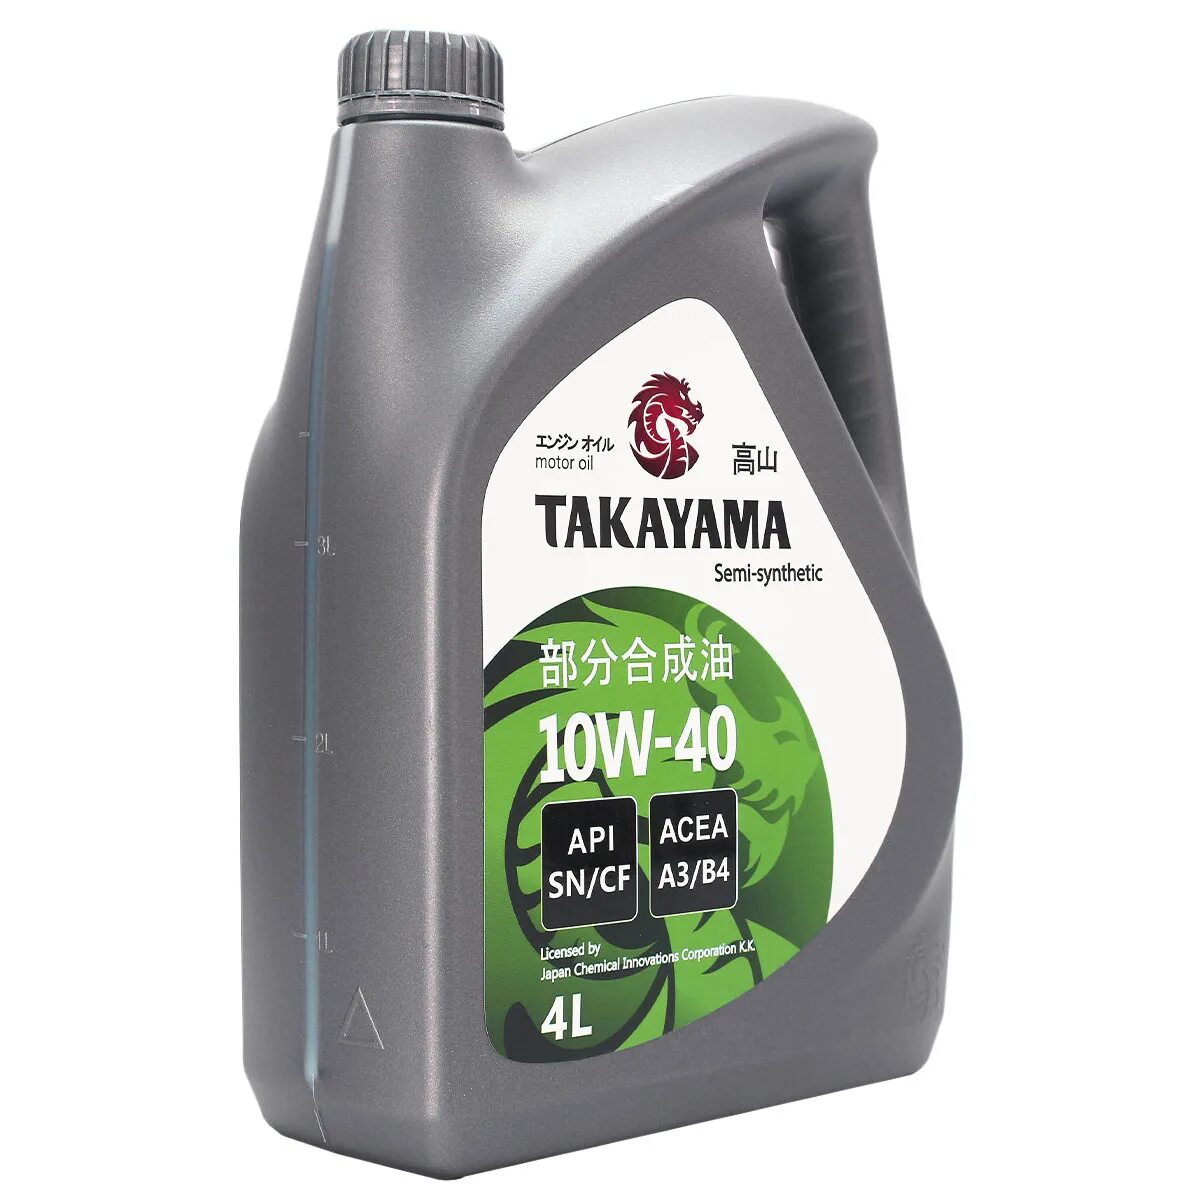 Масло моторное Takayama 10w-40 API SN/CF 4л (пластик). Масло Такаяма 10w 40. Масло Такаяма 10w 40 отзывы. Takayama 10w 40 полусинтетика отзывы.